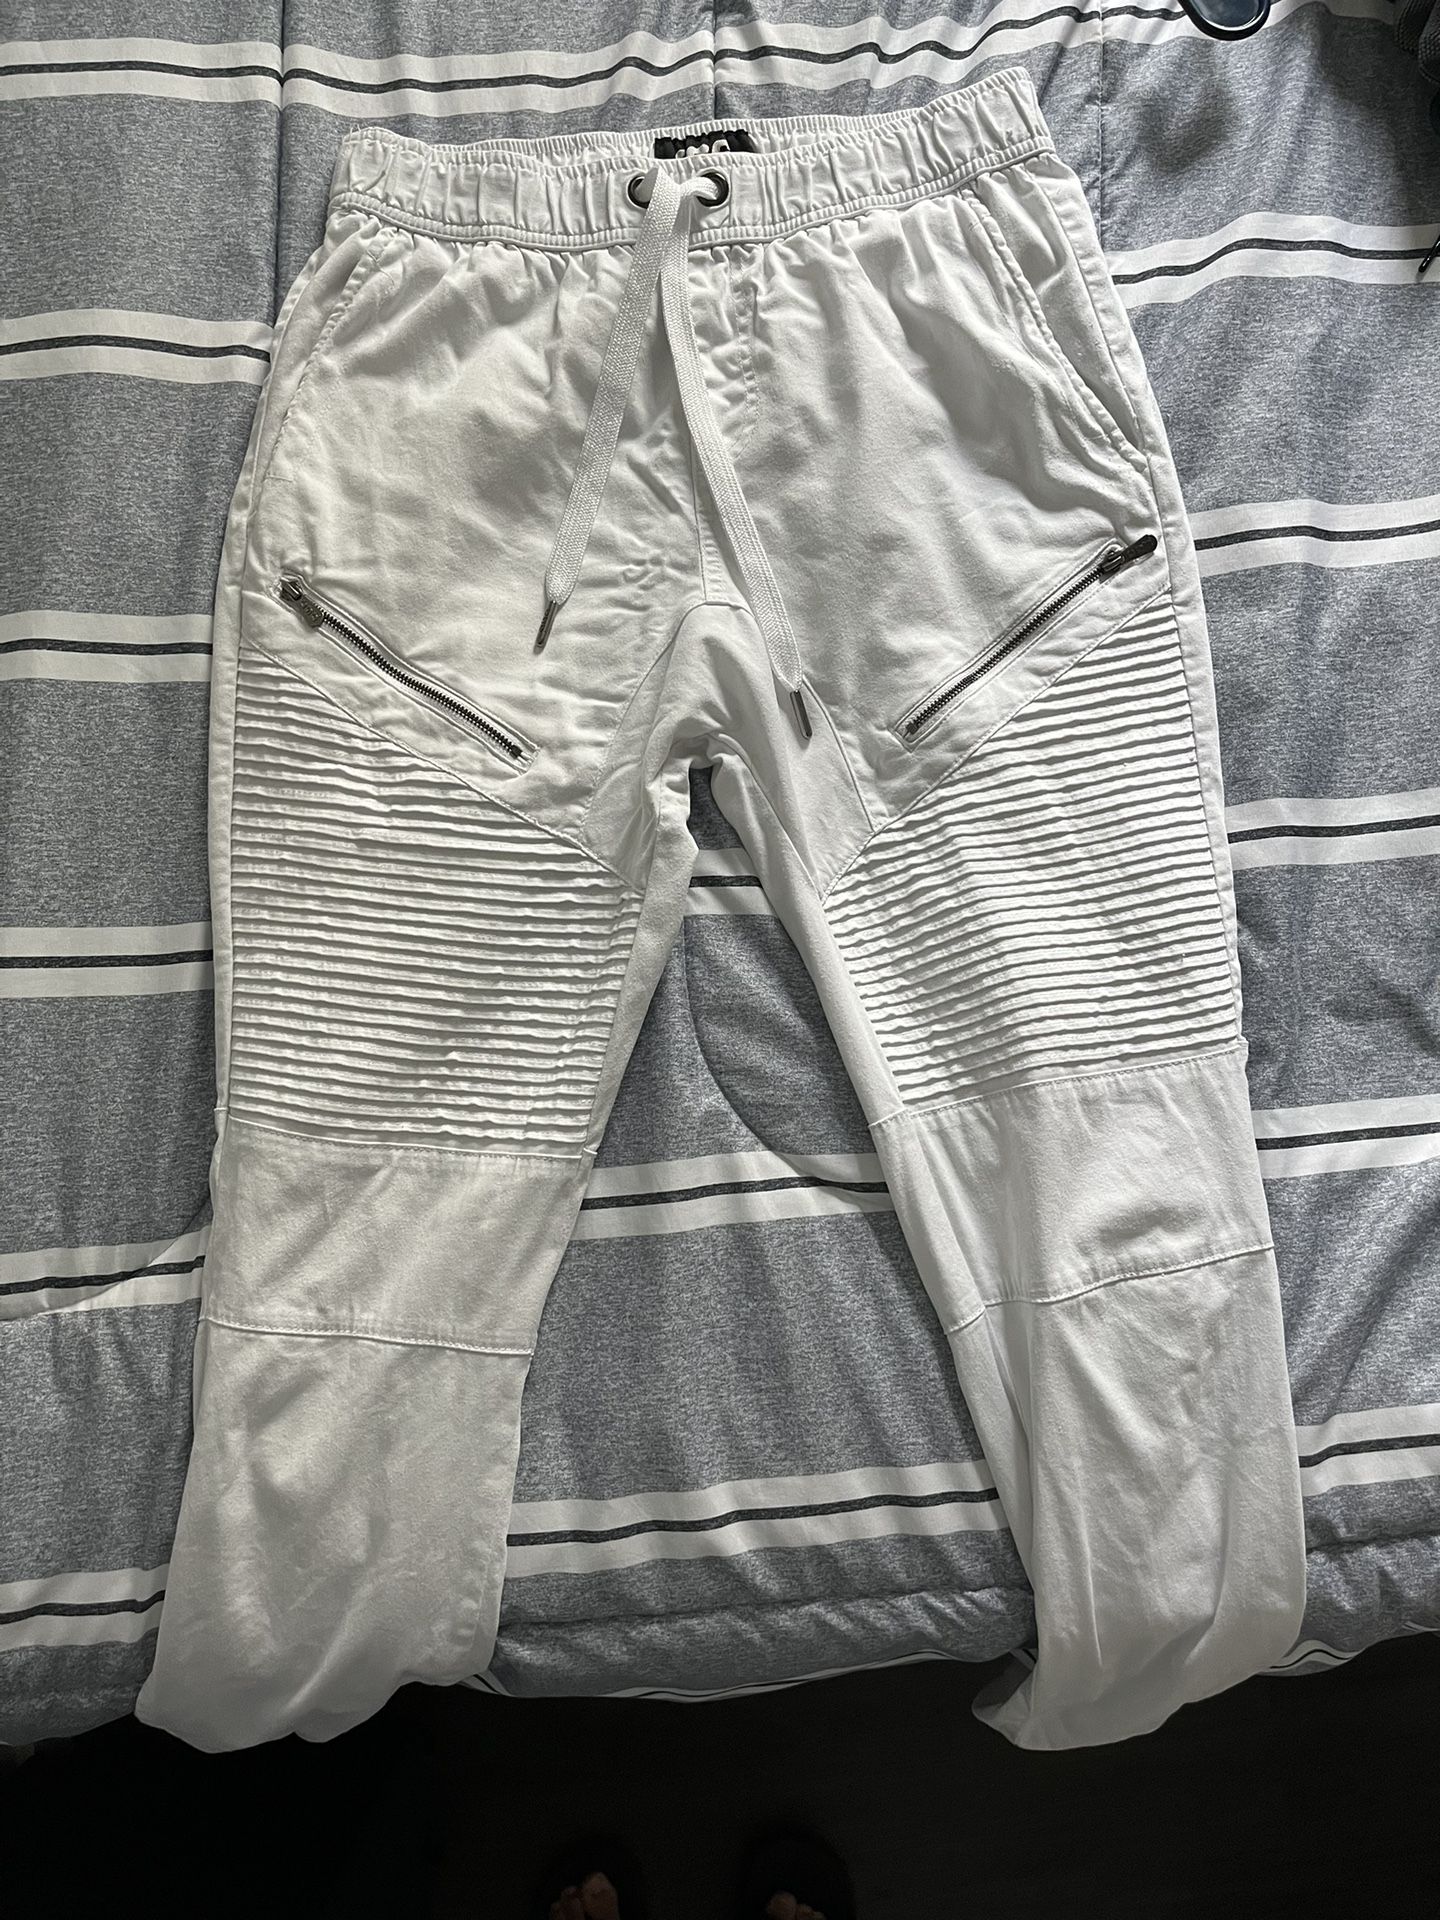 White CSG Jogger Pants (Size Medium)